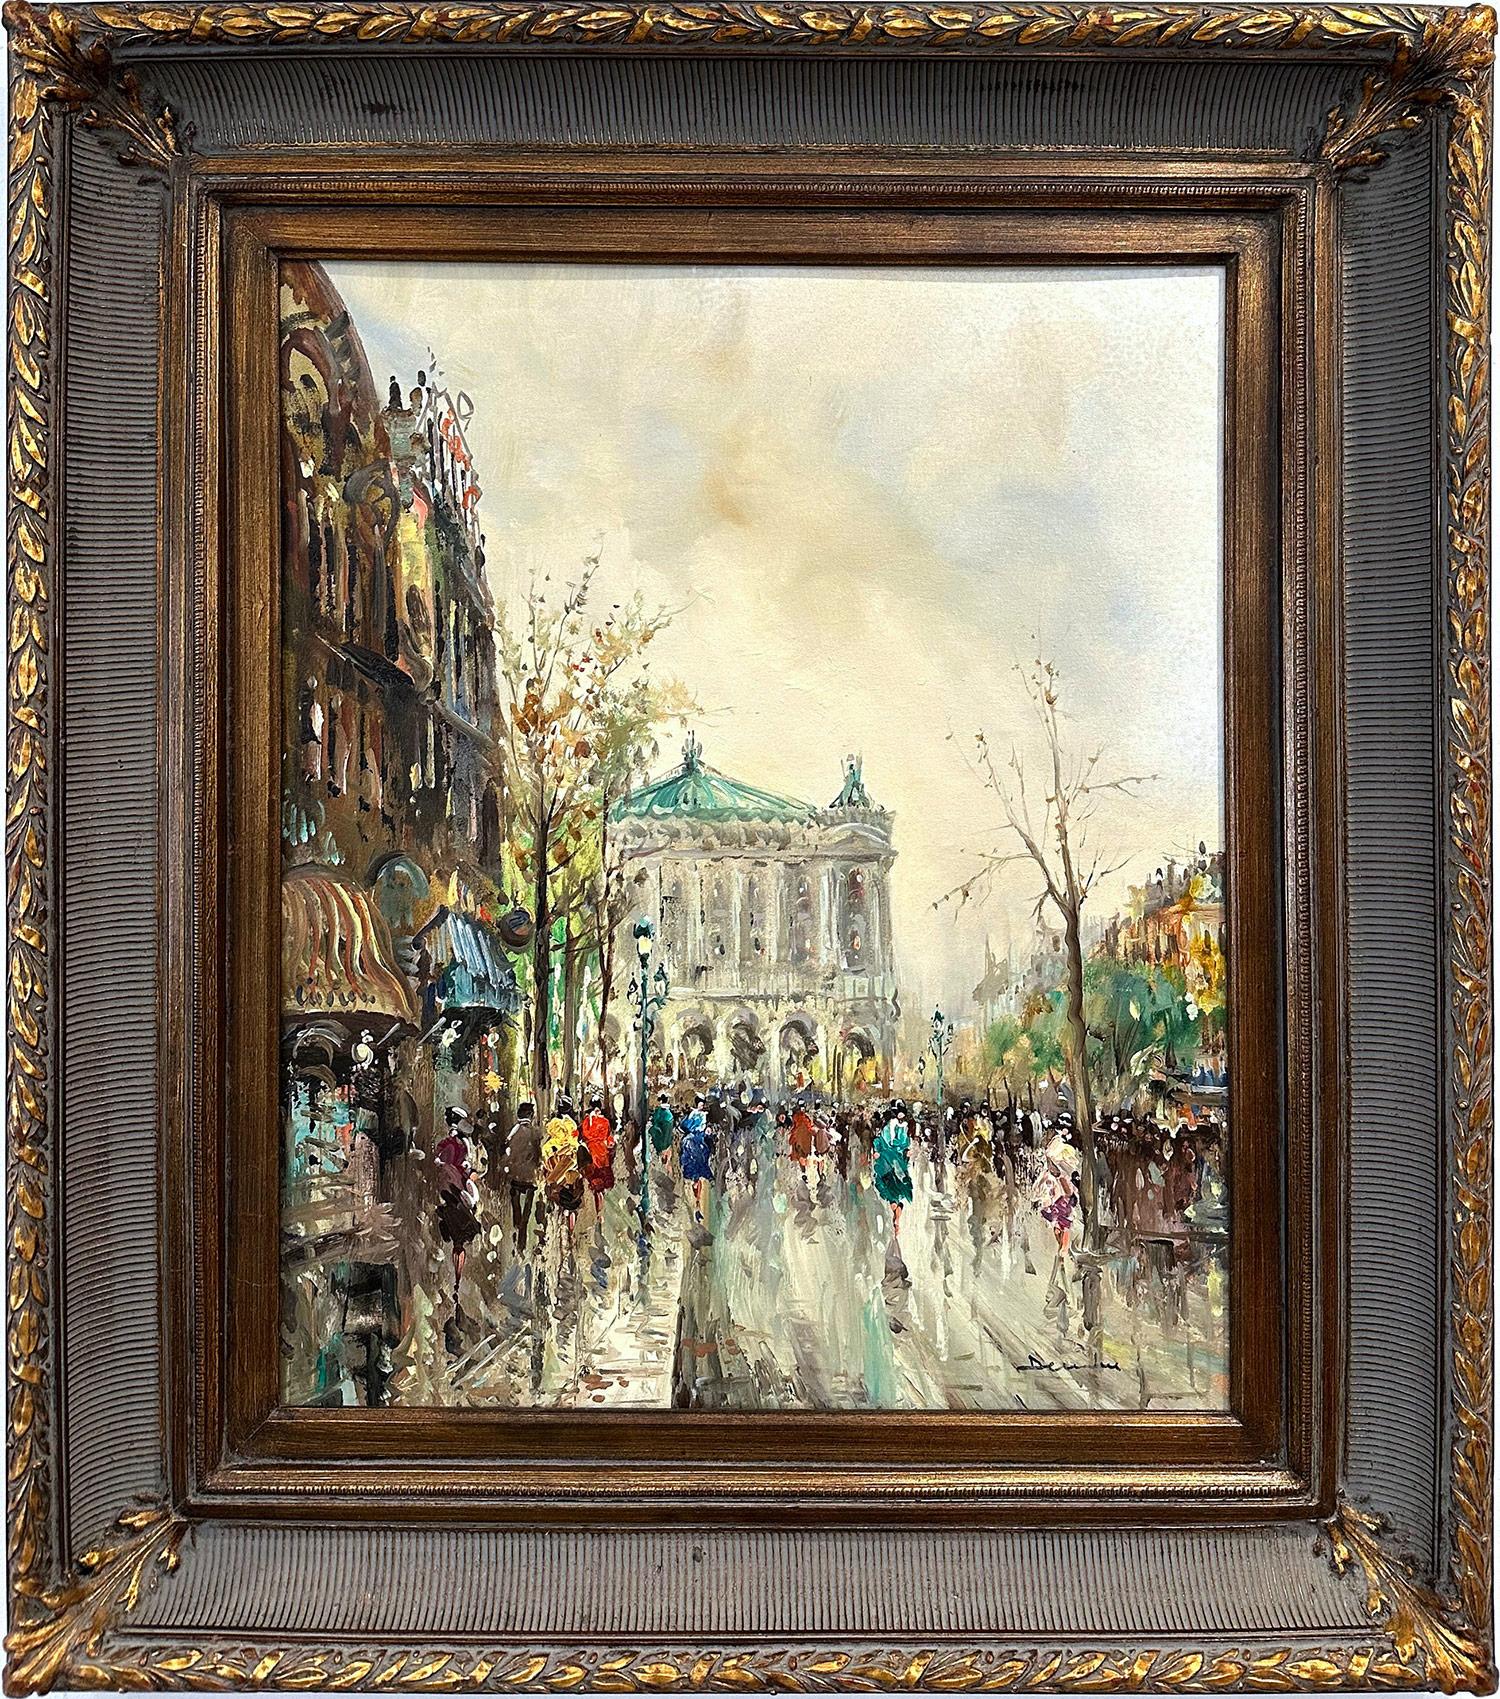 Landscape Painting Pietro Demone - « Day by the Palais Garnier », peinture à l'huile post-impressionniste du 20e siècle encadrée